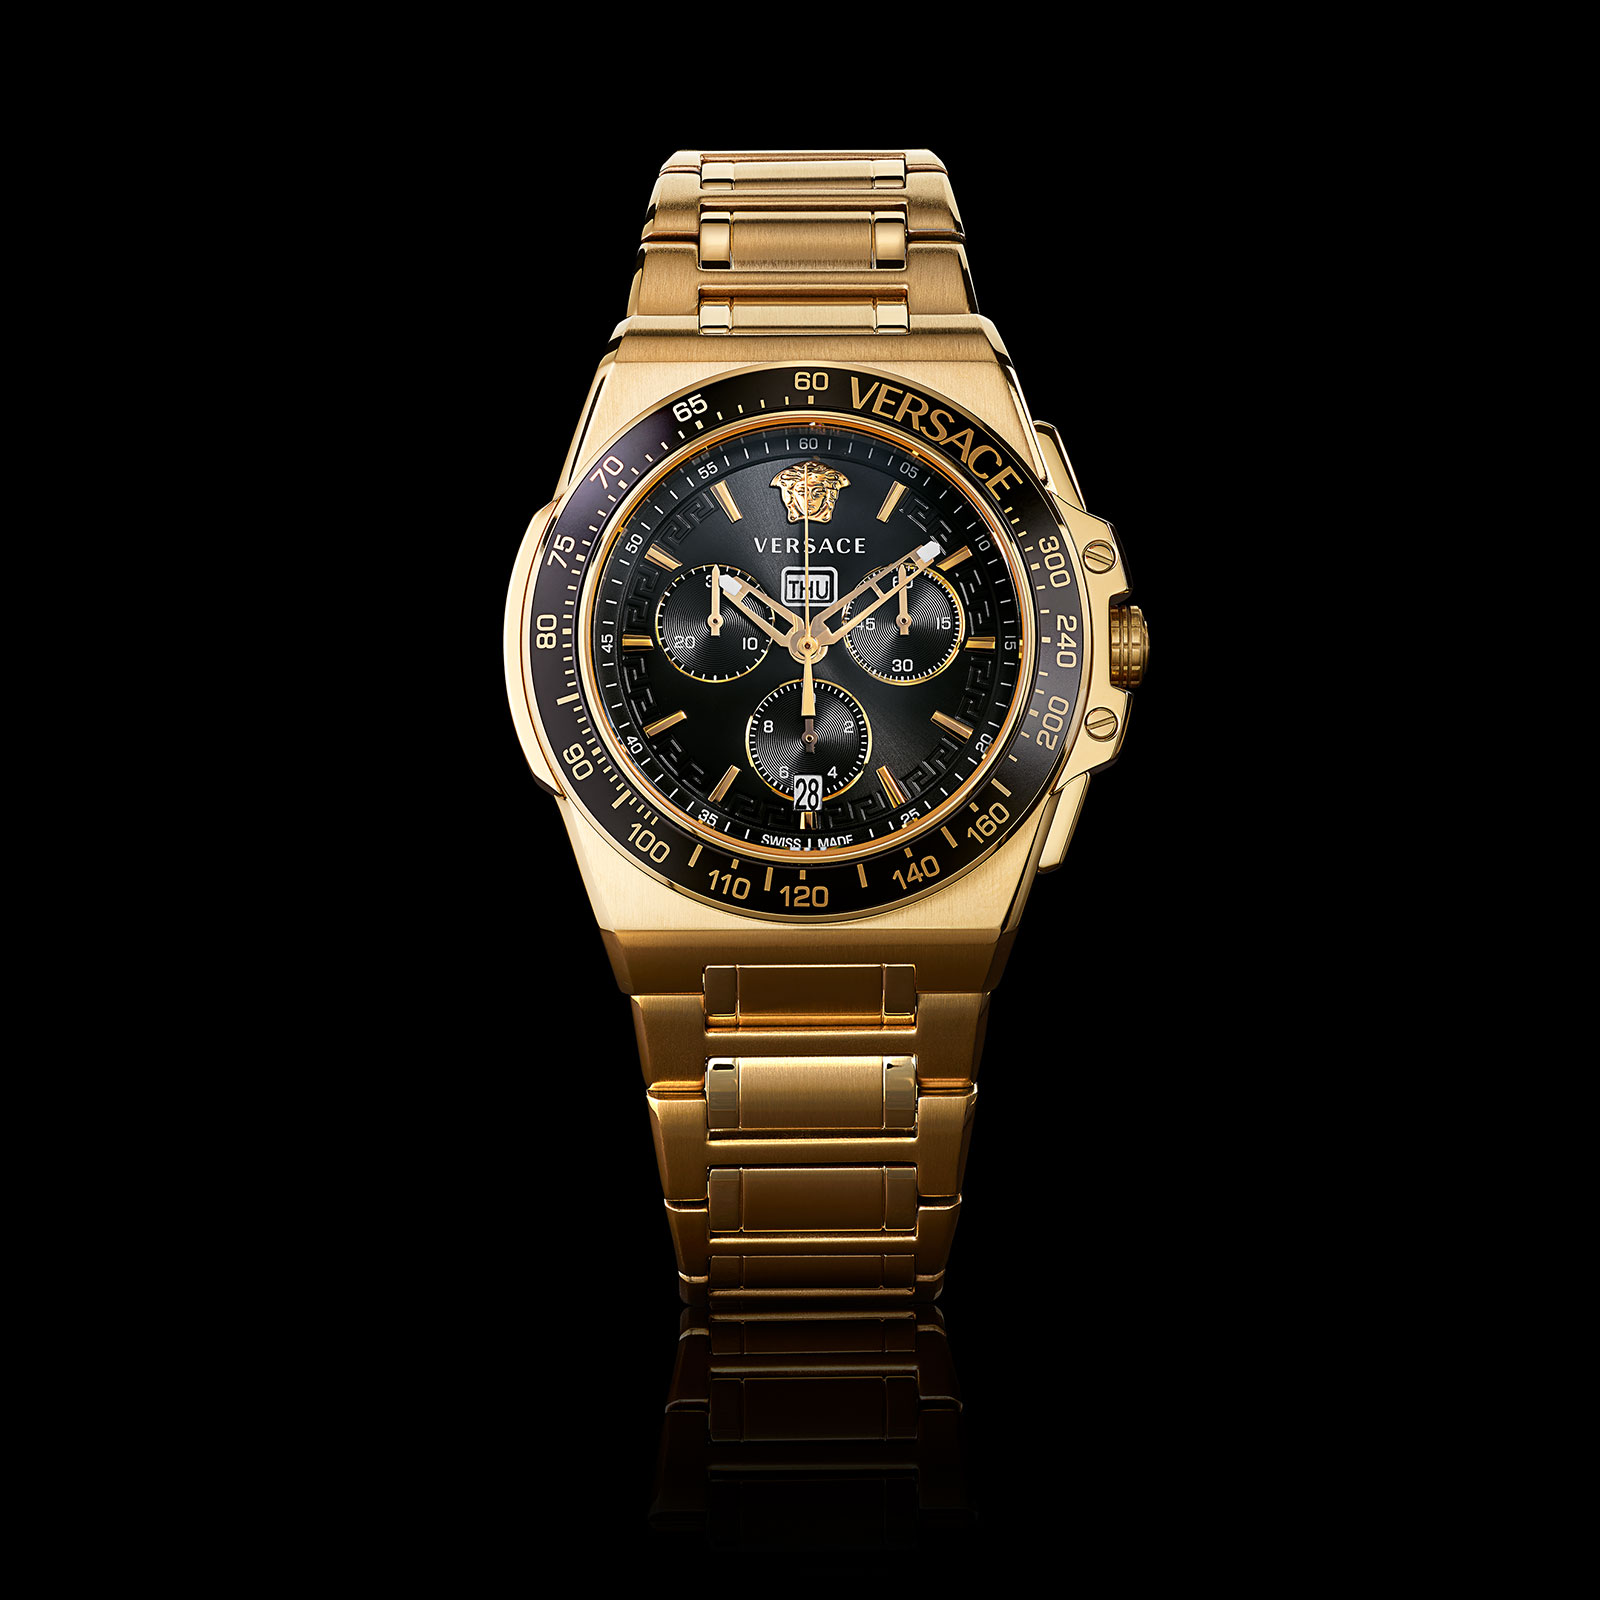 - ヴェルサーチェ・イタリア発の高級腕時計 WATCHES STYLE掲載｜NEWS｜VERSACE ヴェルサーチェJAPAN公式サイト FORZA